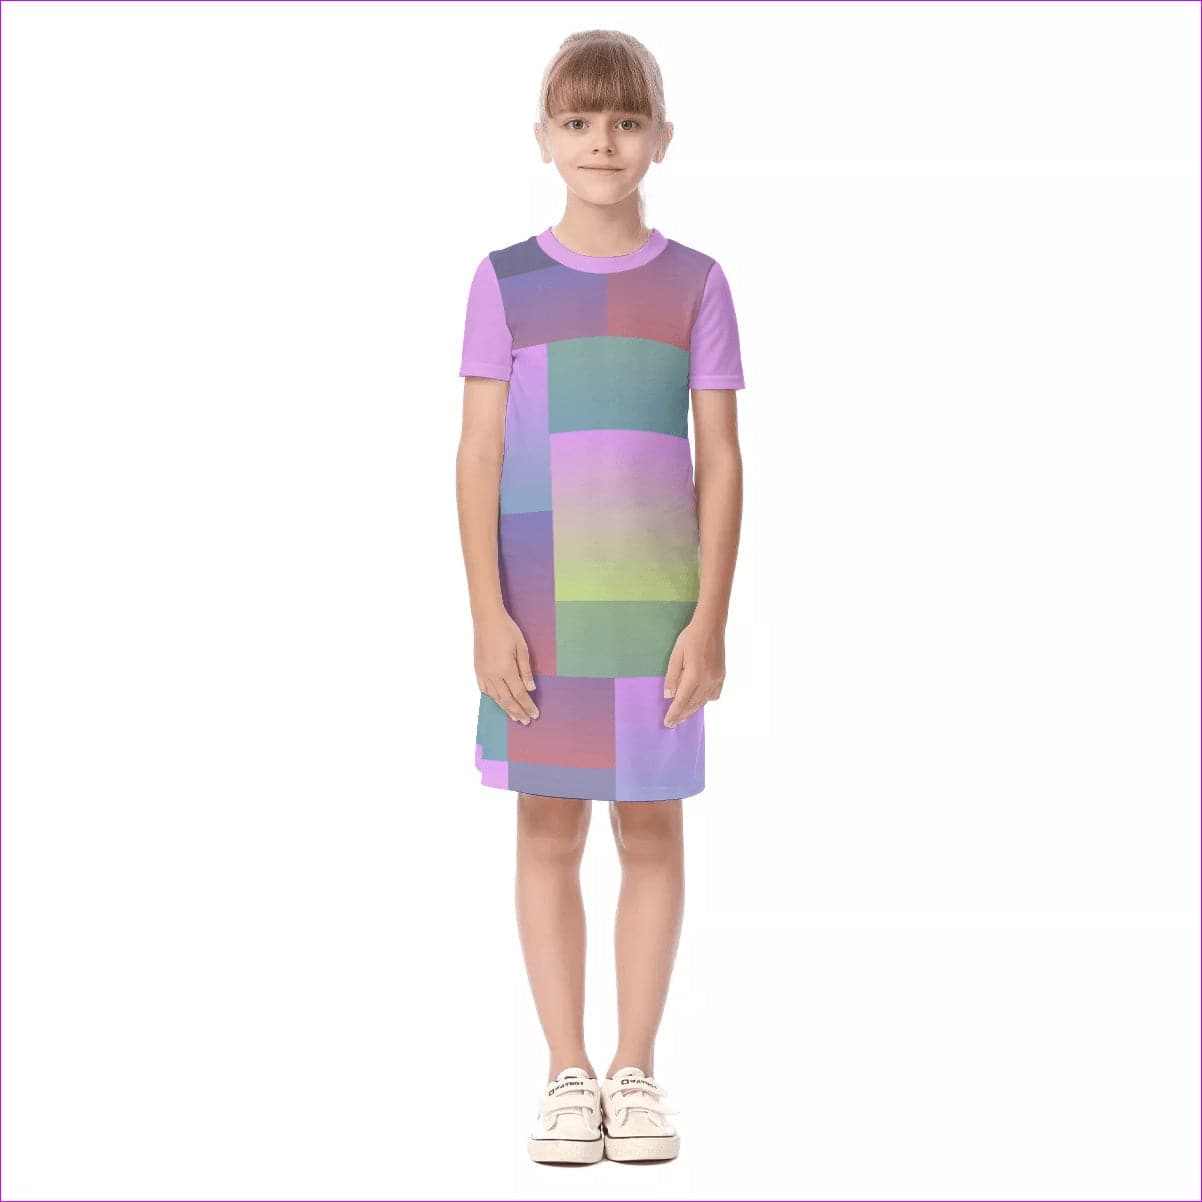 Paxx 2 Kids Girls Short Sleeve Dress - kid's dress at TFC&H Co.